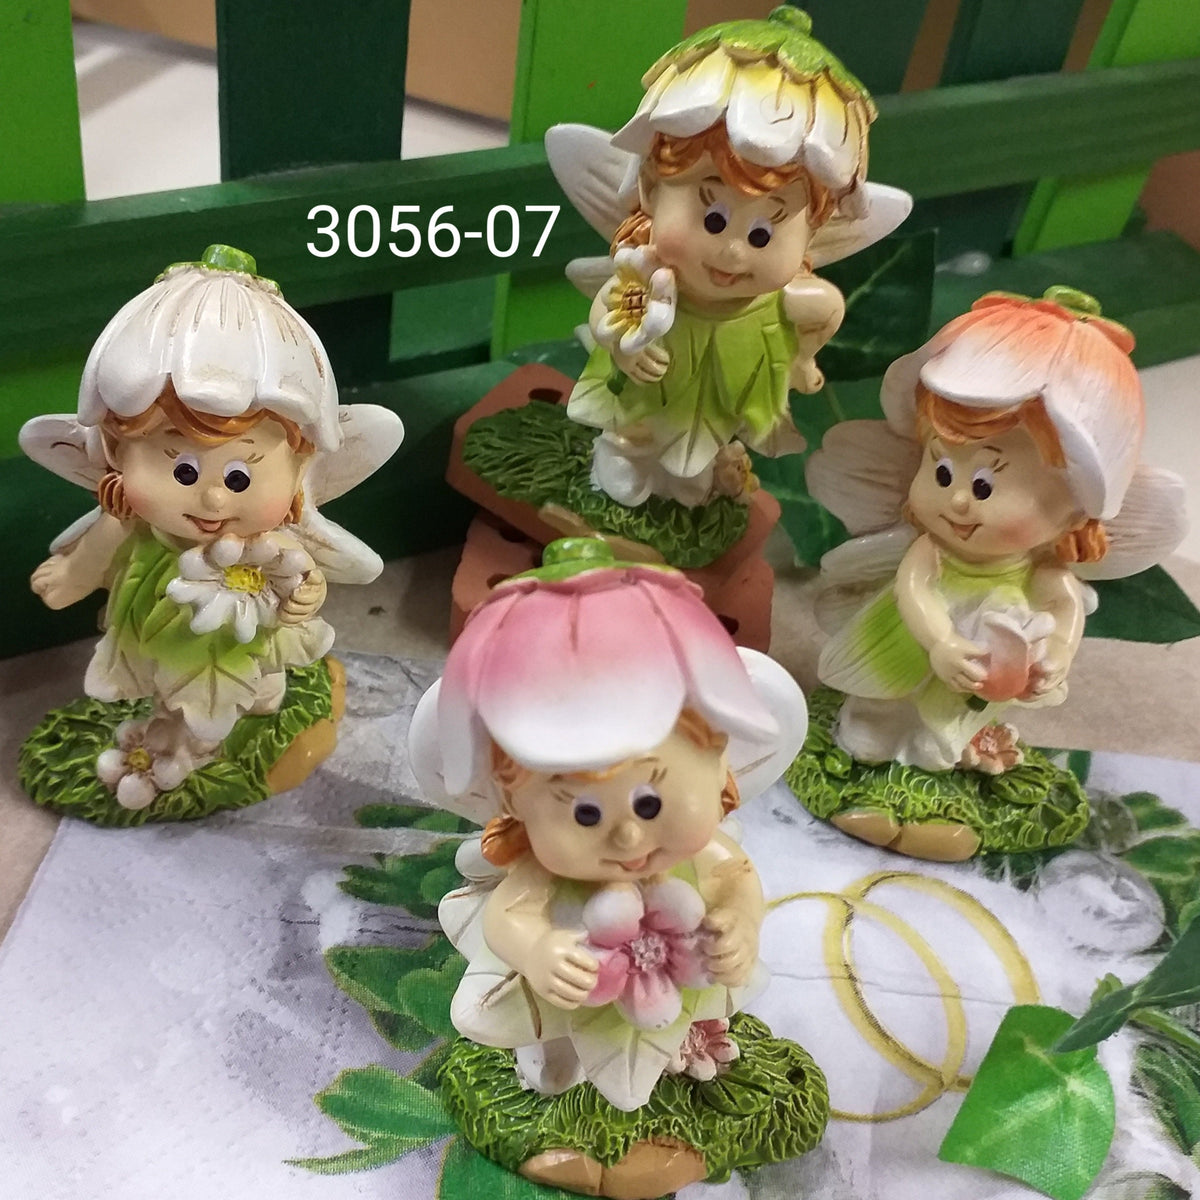 Fate elfi statuine bomboniere collezione personaggi bosco Pasqua –  hobbyshopbomboniere